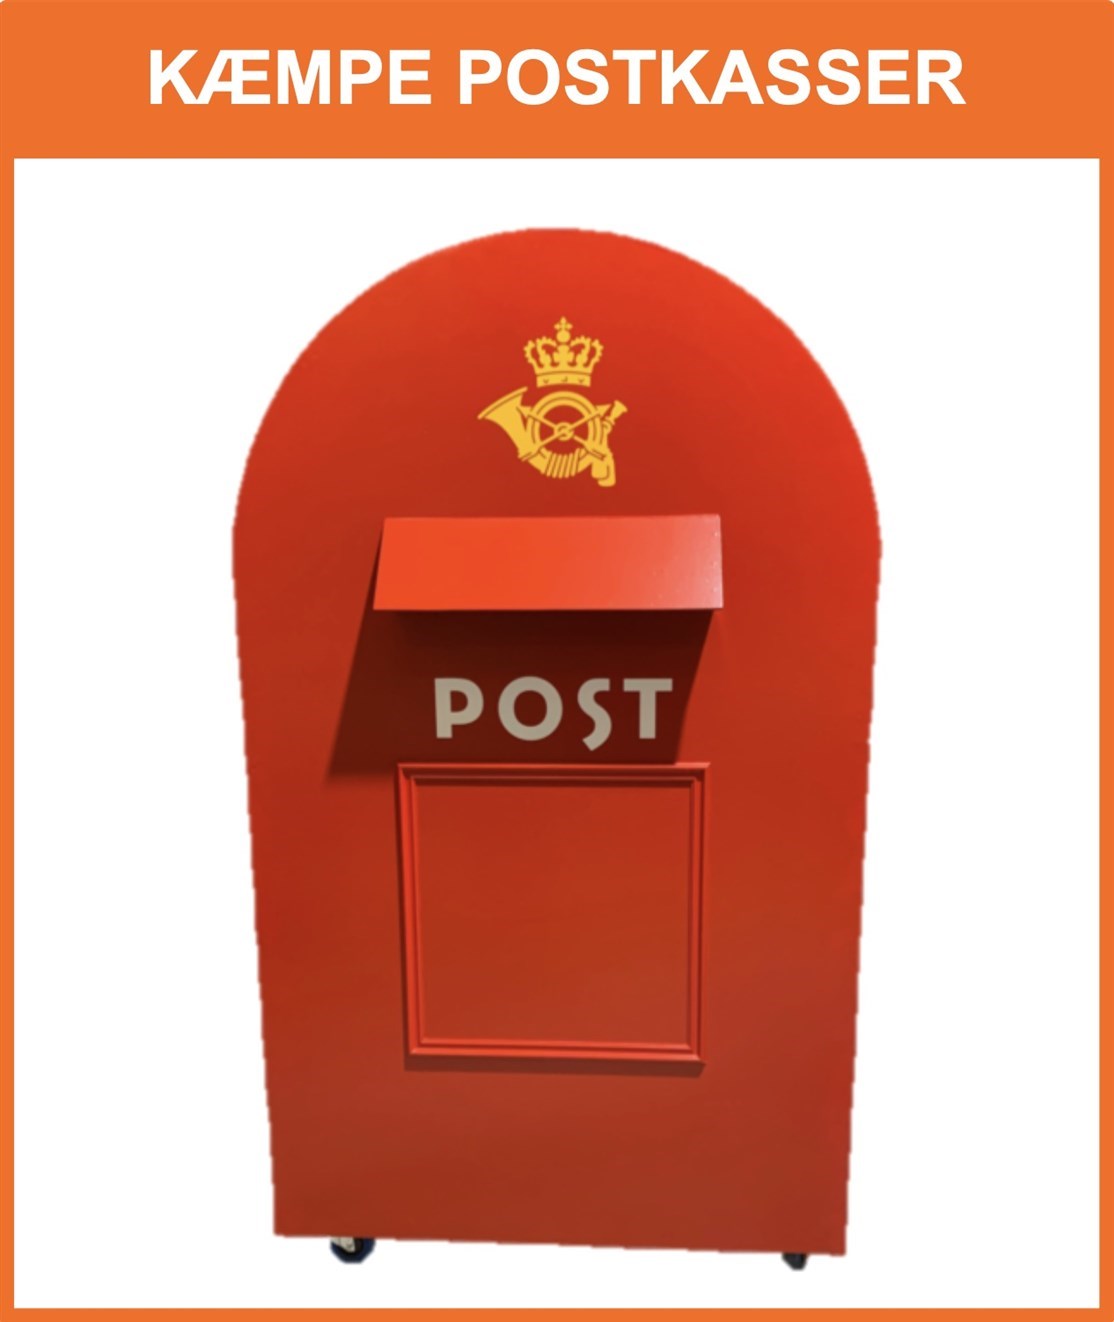 Lej en kæmpe postkasse til dit event
*